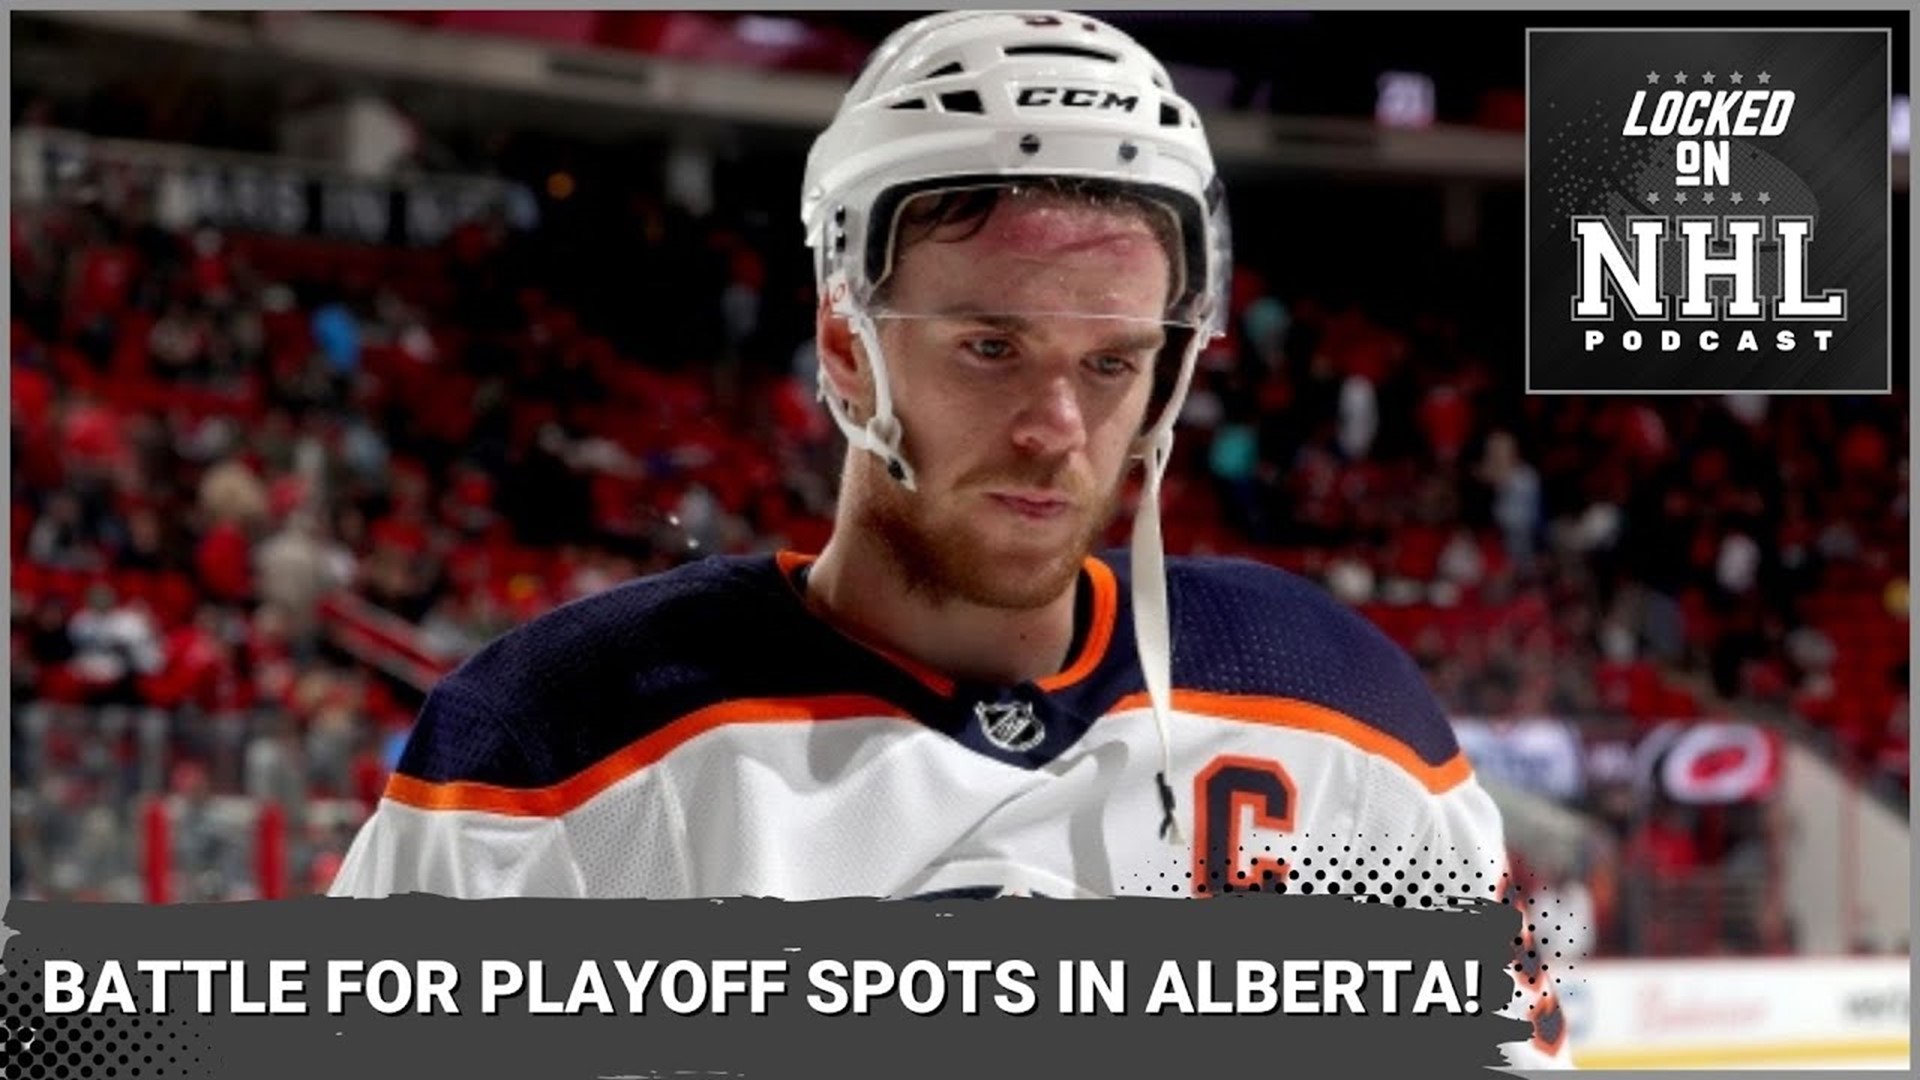 Battle of Alberta, which Albertan team misses the playoffs?